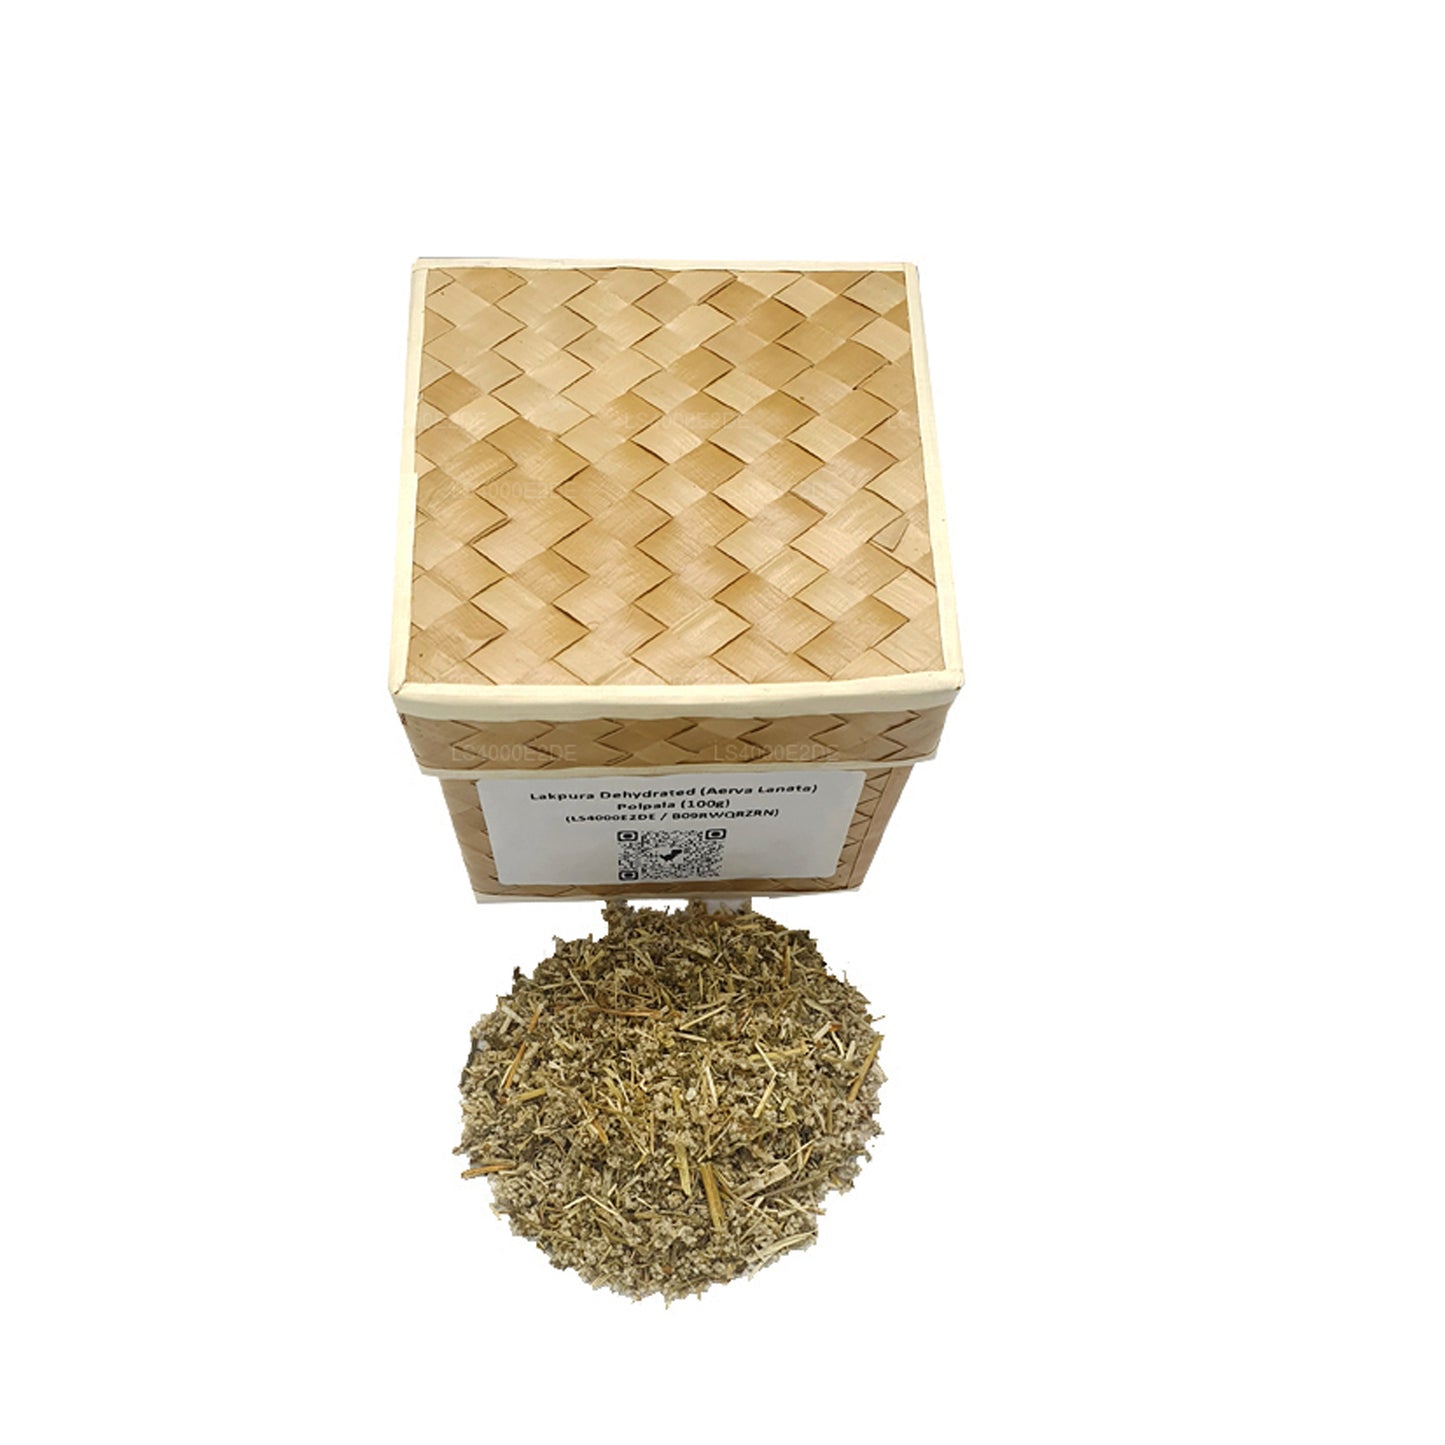 Caja de palpalas deshidratadas (Aerva Lanata) de Lakpura (100 g)